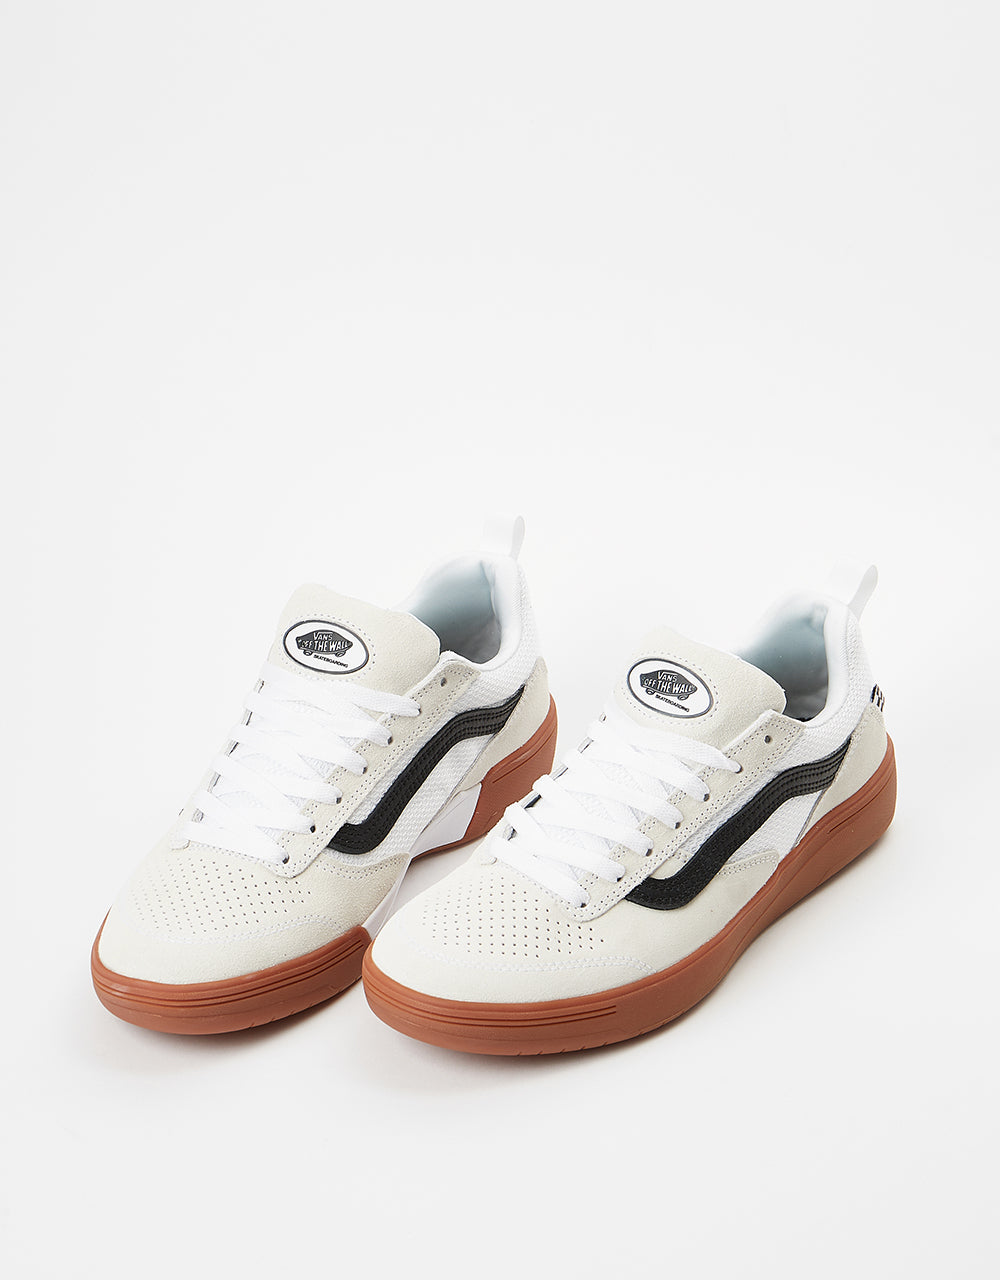 Vans Zahba Skate Shoes - White/Black/Gum